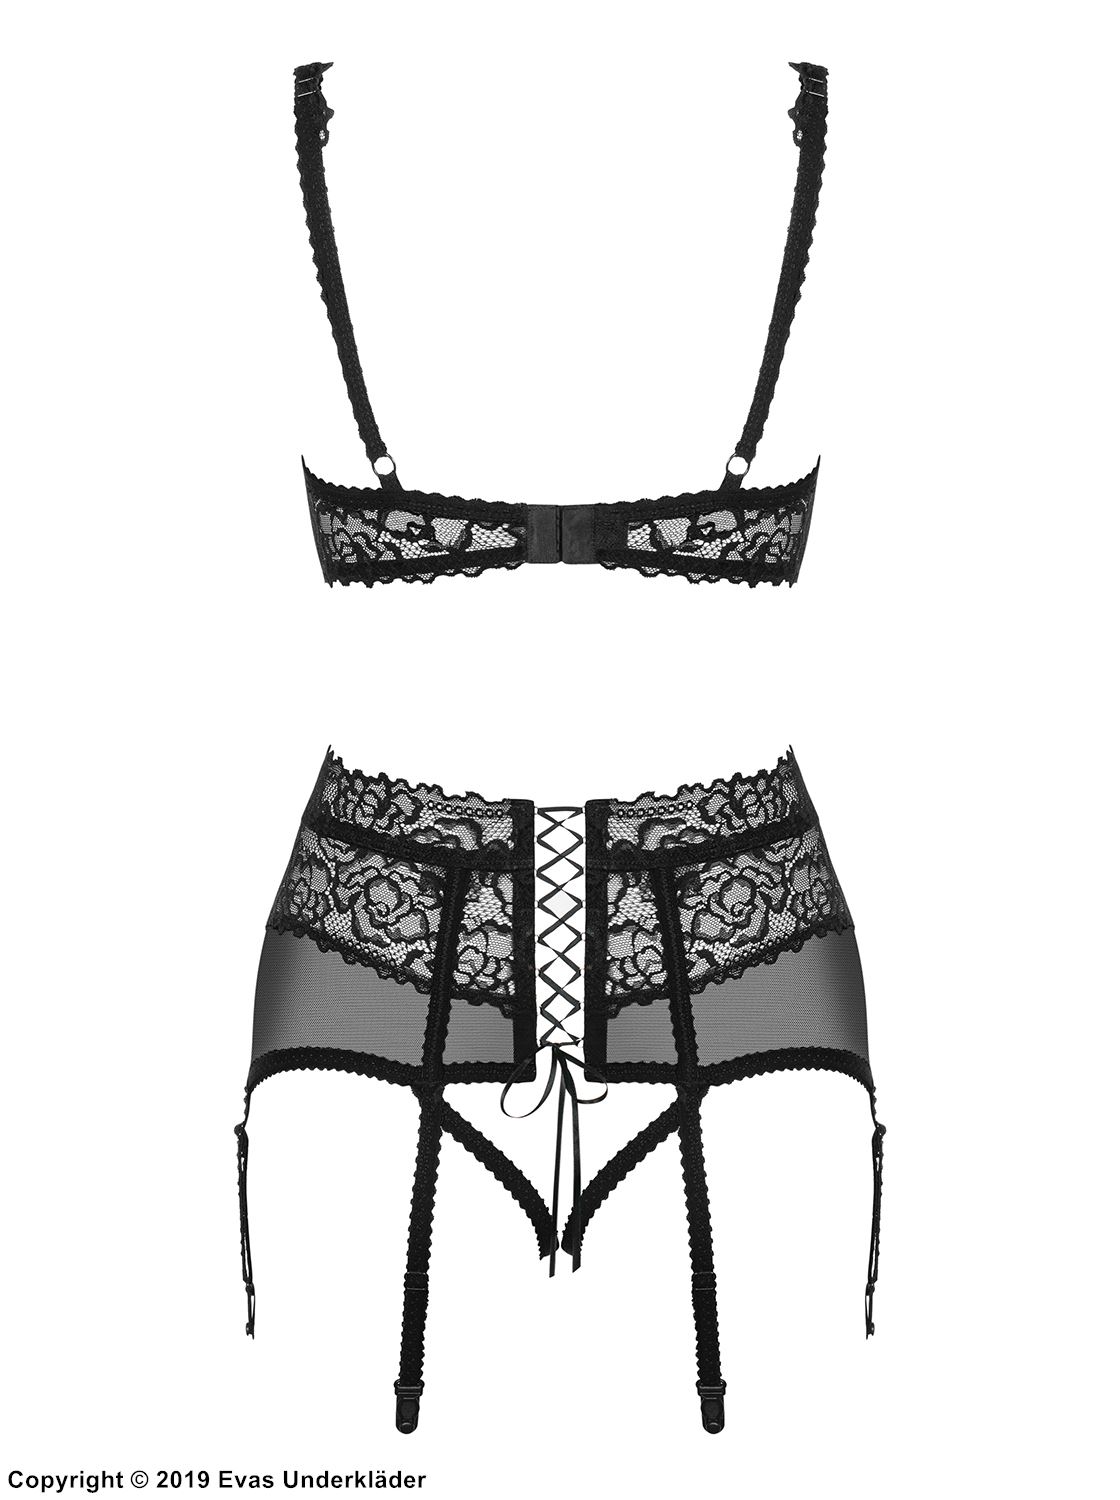 Seductive lingerie set, lace overlay, open crotch